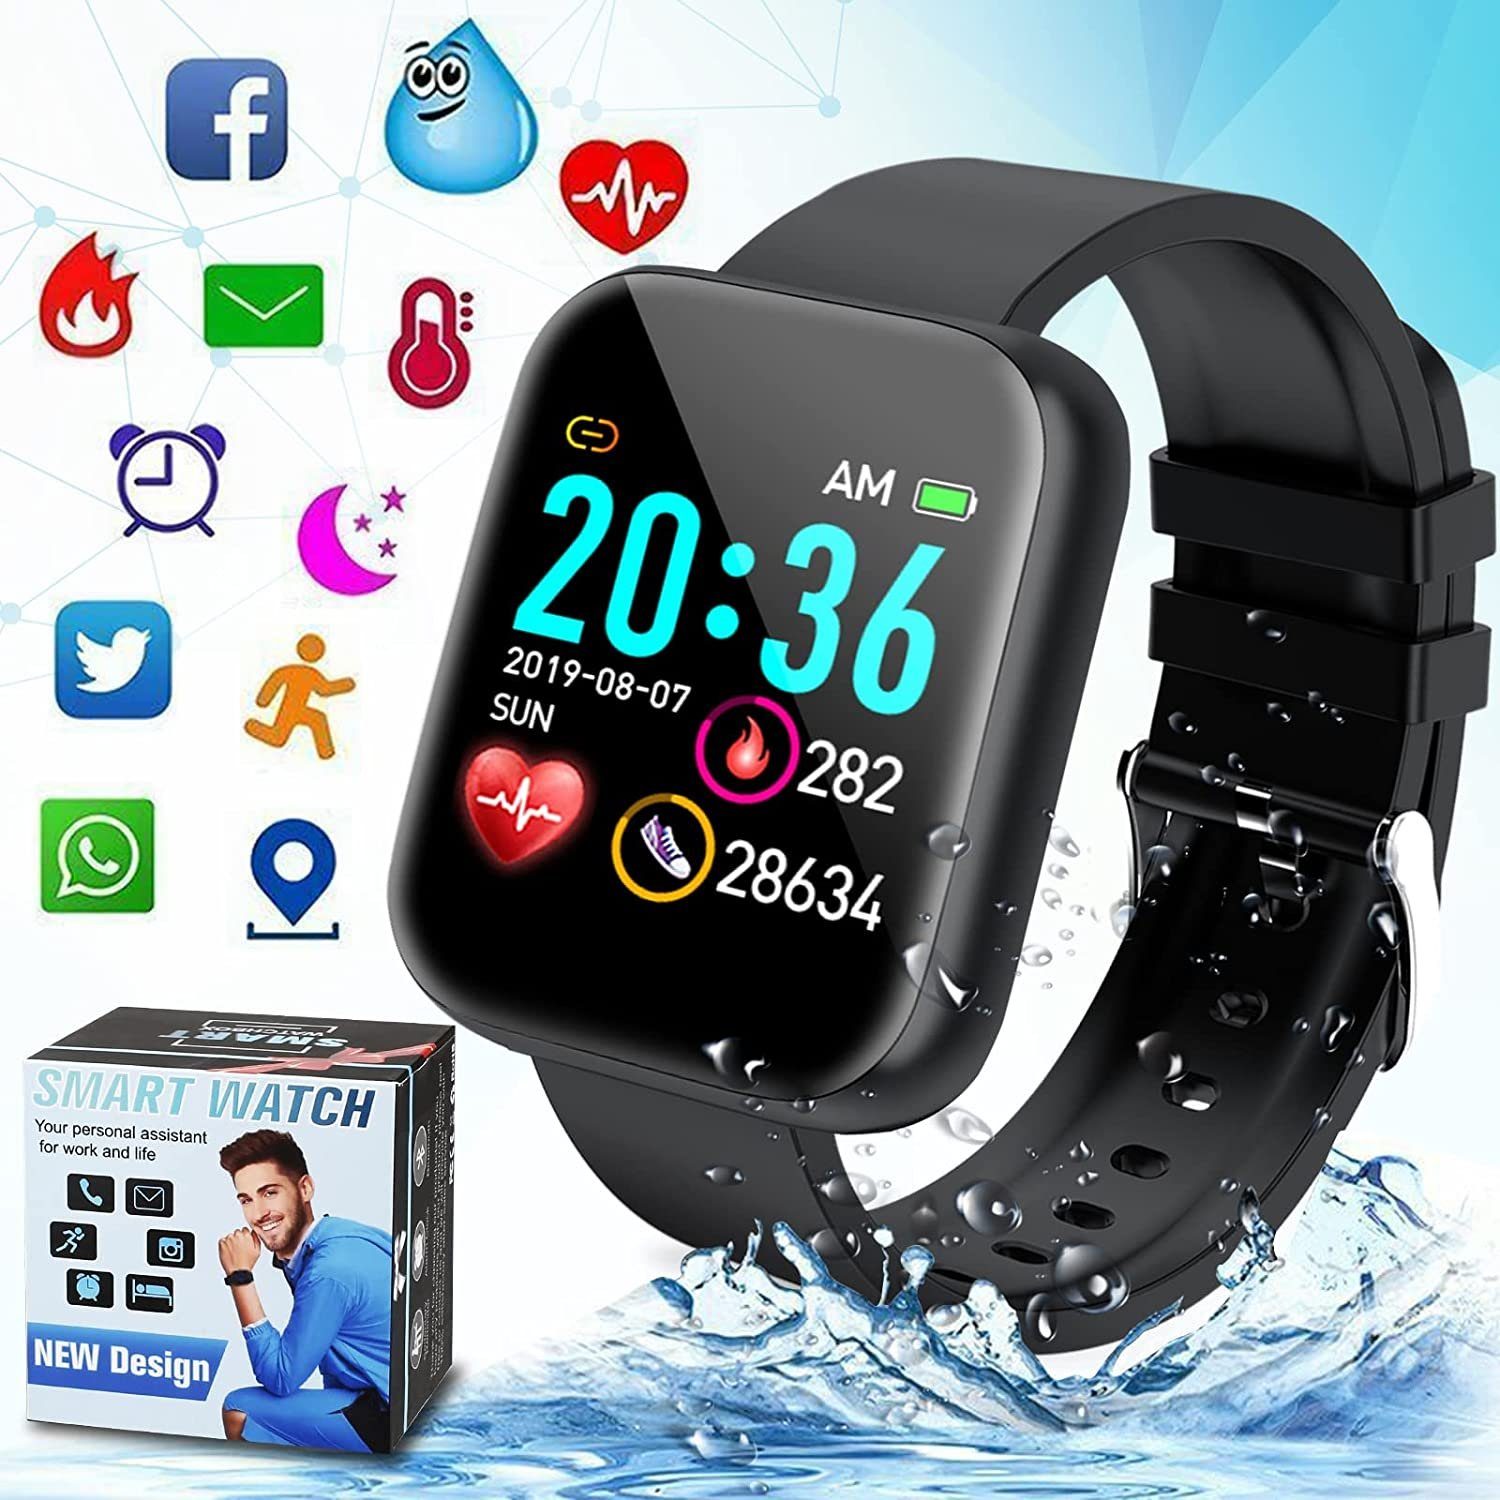 Armband Smartwatch Blutdruck Pulsuhr Fintess Tracker Sportuhr Schrittzähler NEU 